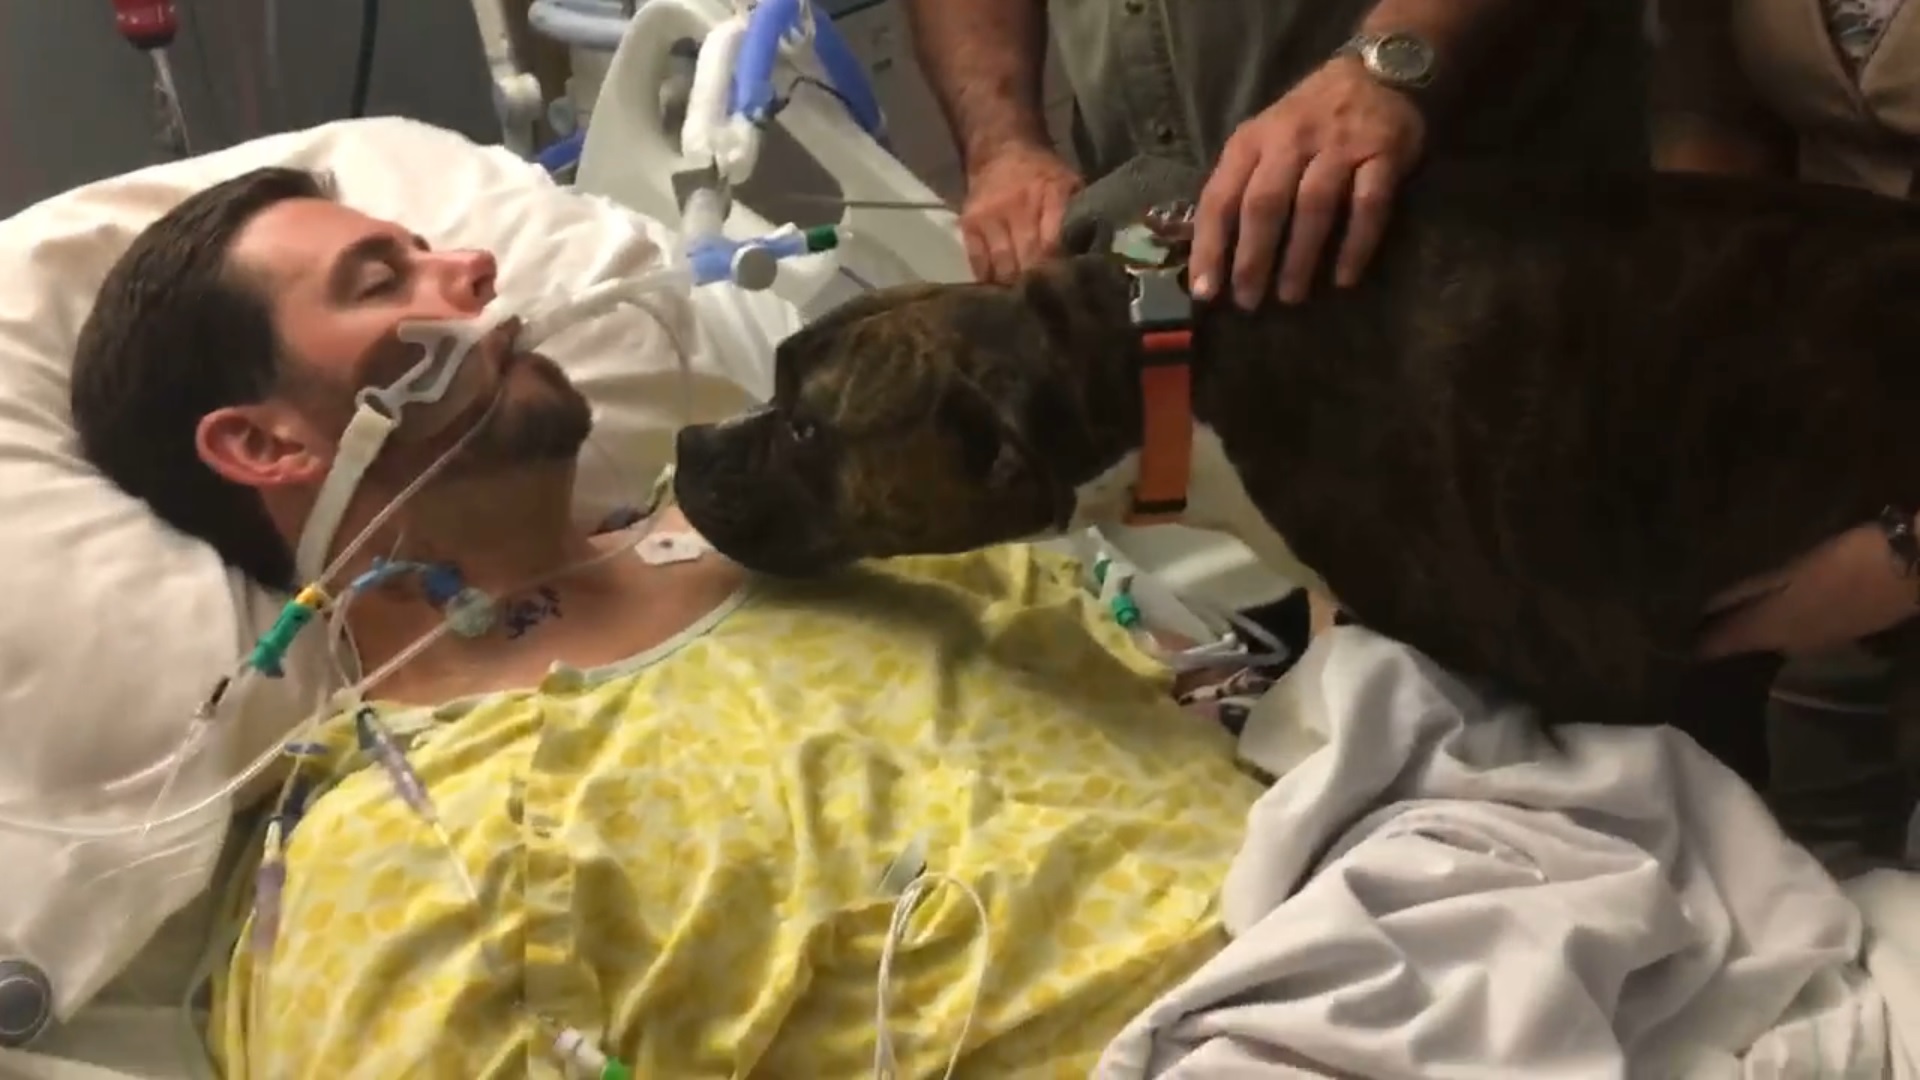 Elbúcsúzhatott a kutya a kórházban elhunyt gazdájától